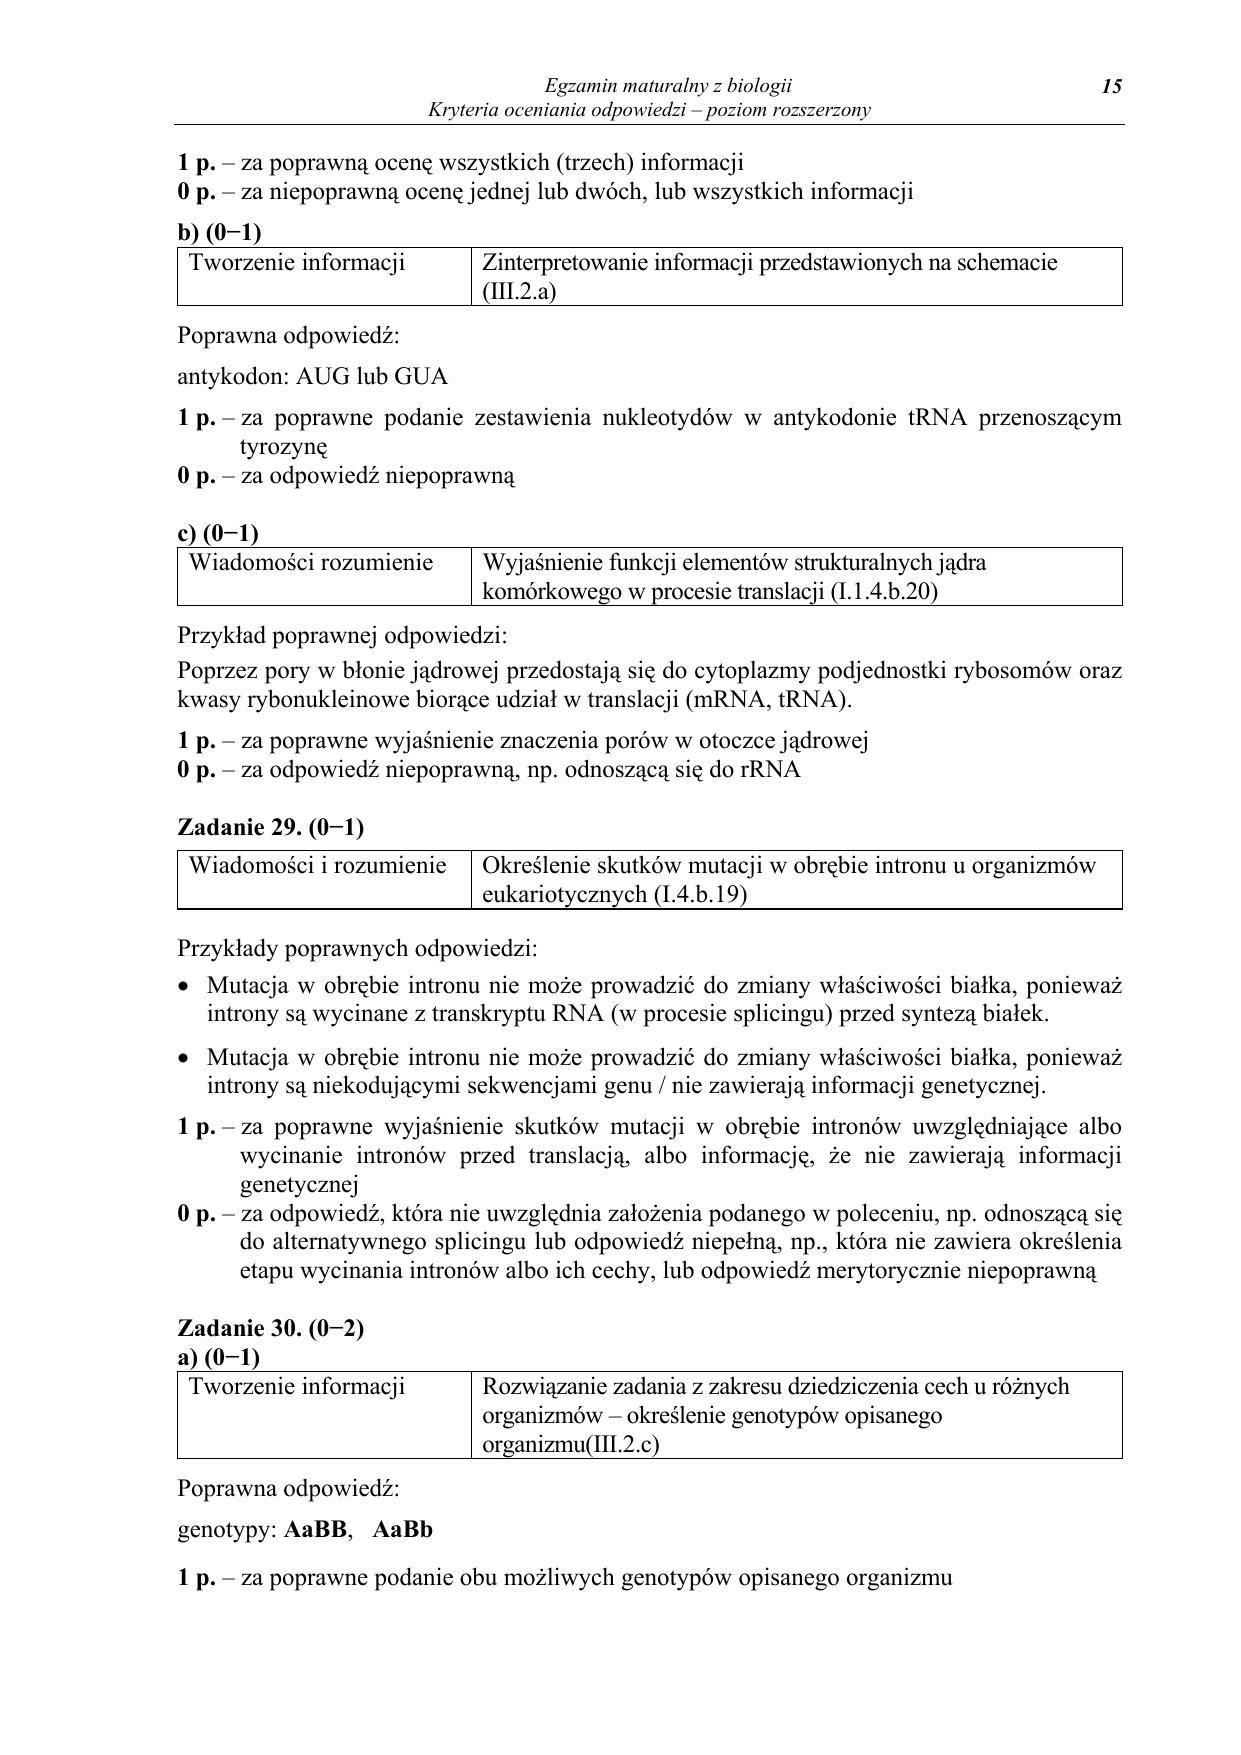 odpowiedzi-biologia-poziom-rozszerzony-matura-2012-15